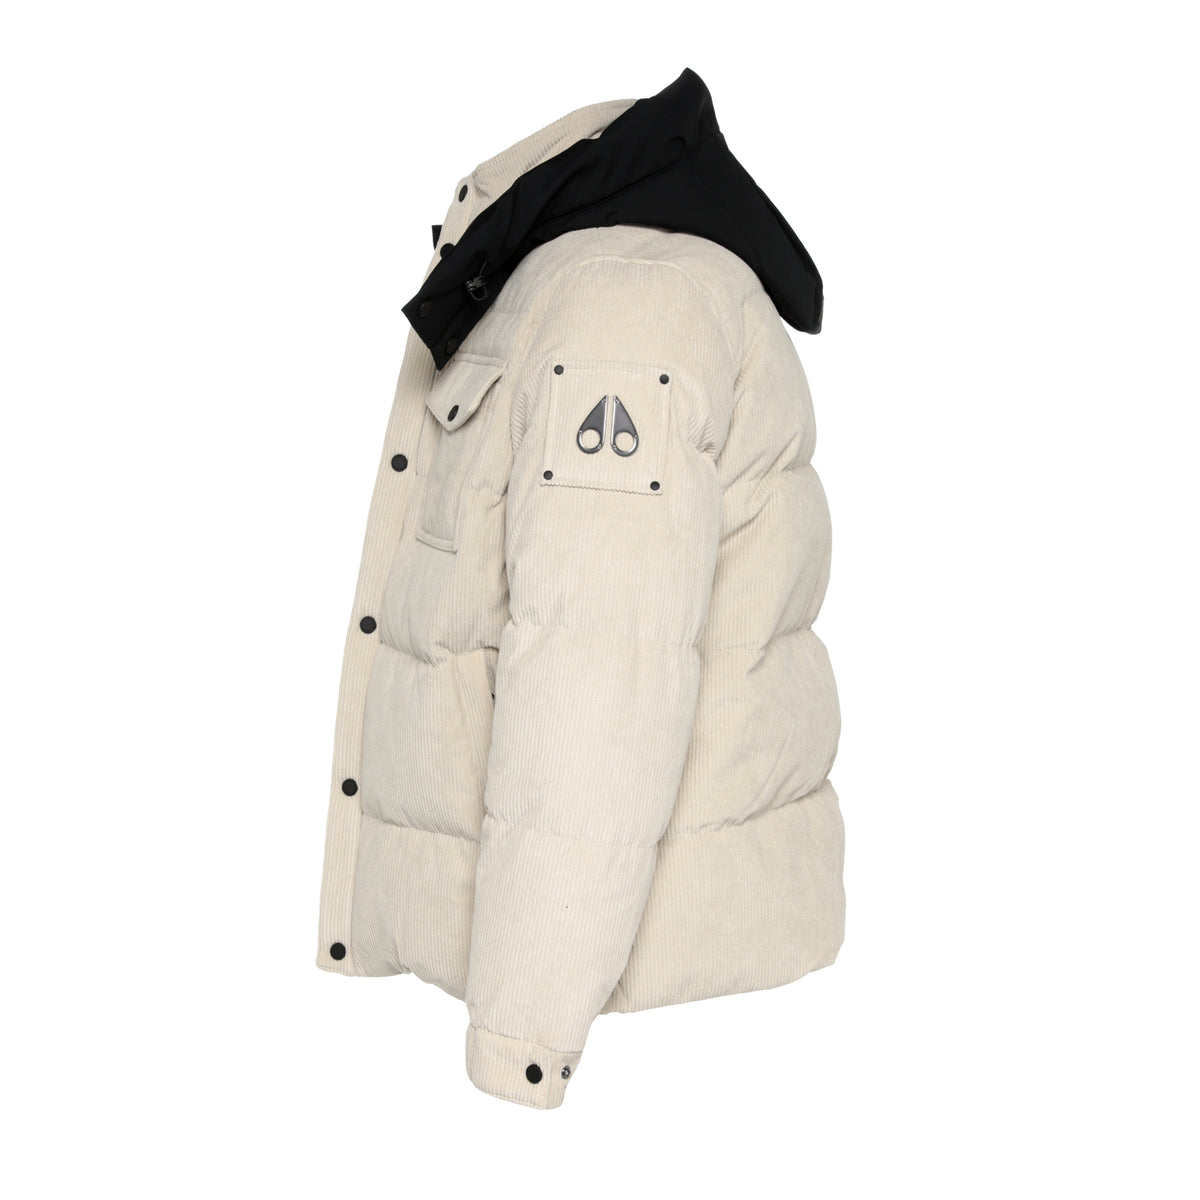 Moose Knuckles Souris Men's Winter Jacket - SIZE Boutique